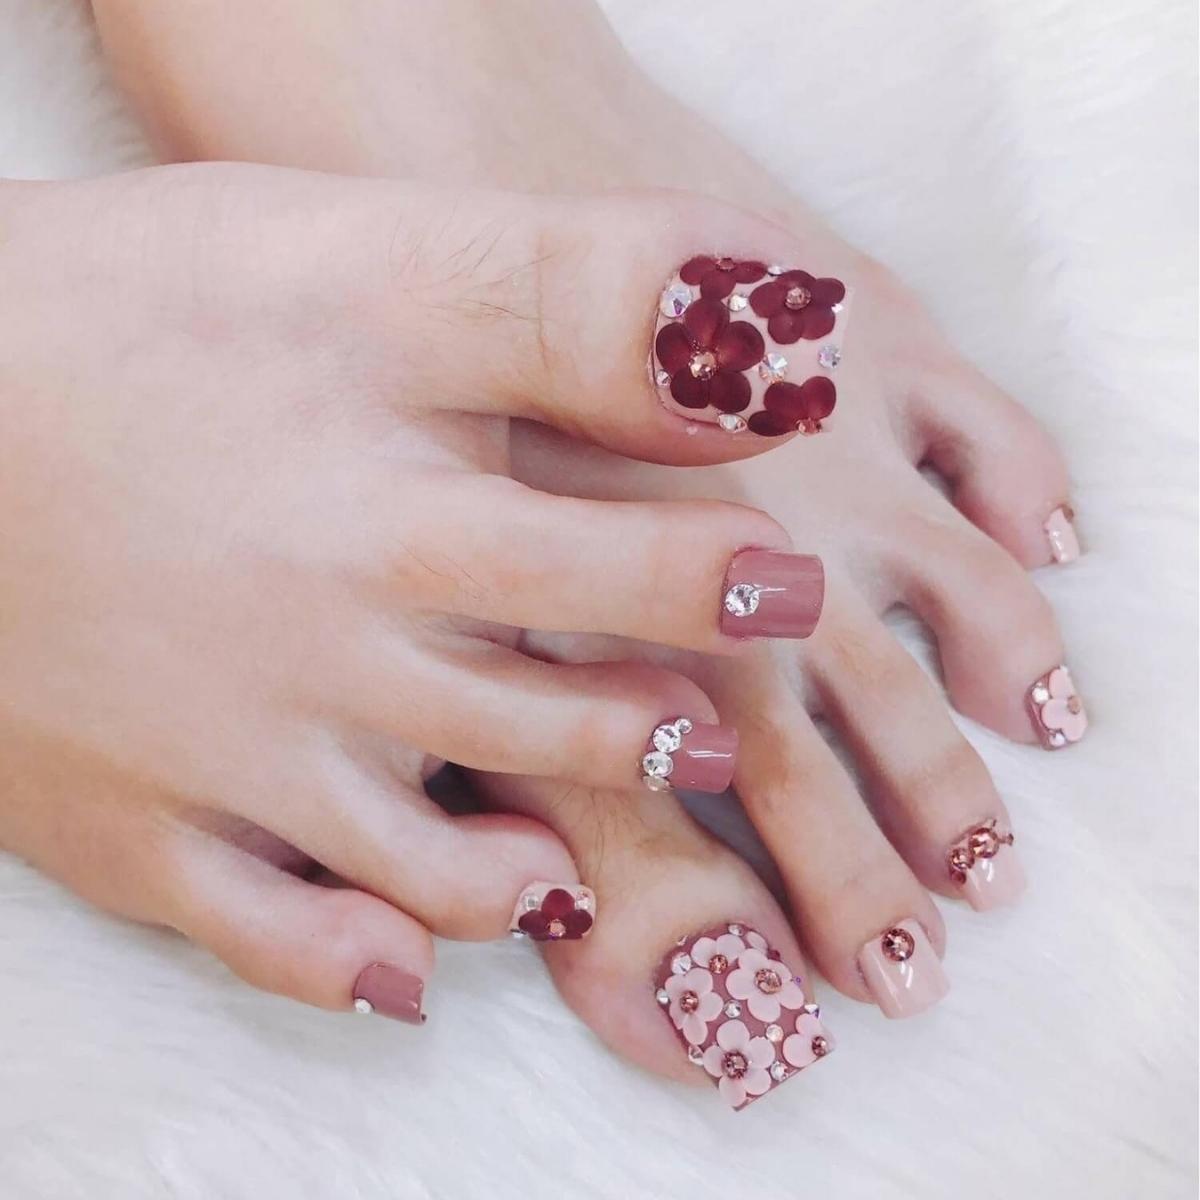 Nail chân color hồng nhạt nhẽo đính kèm đá hình hoa đáng yêu 